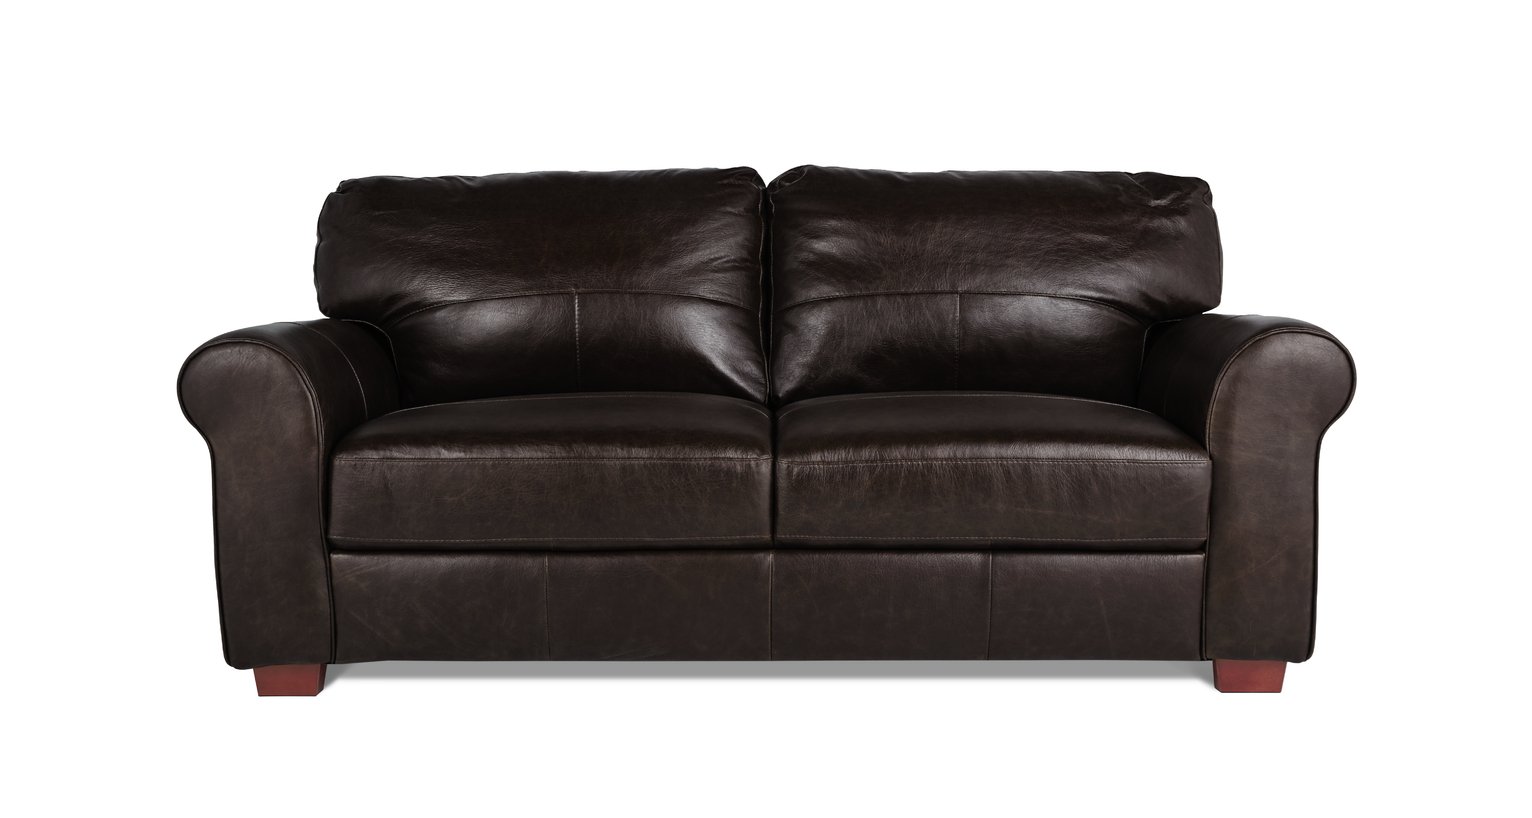 Habitat Salisbury 3 Seater Leather Sofa - Dark Brown